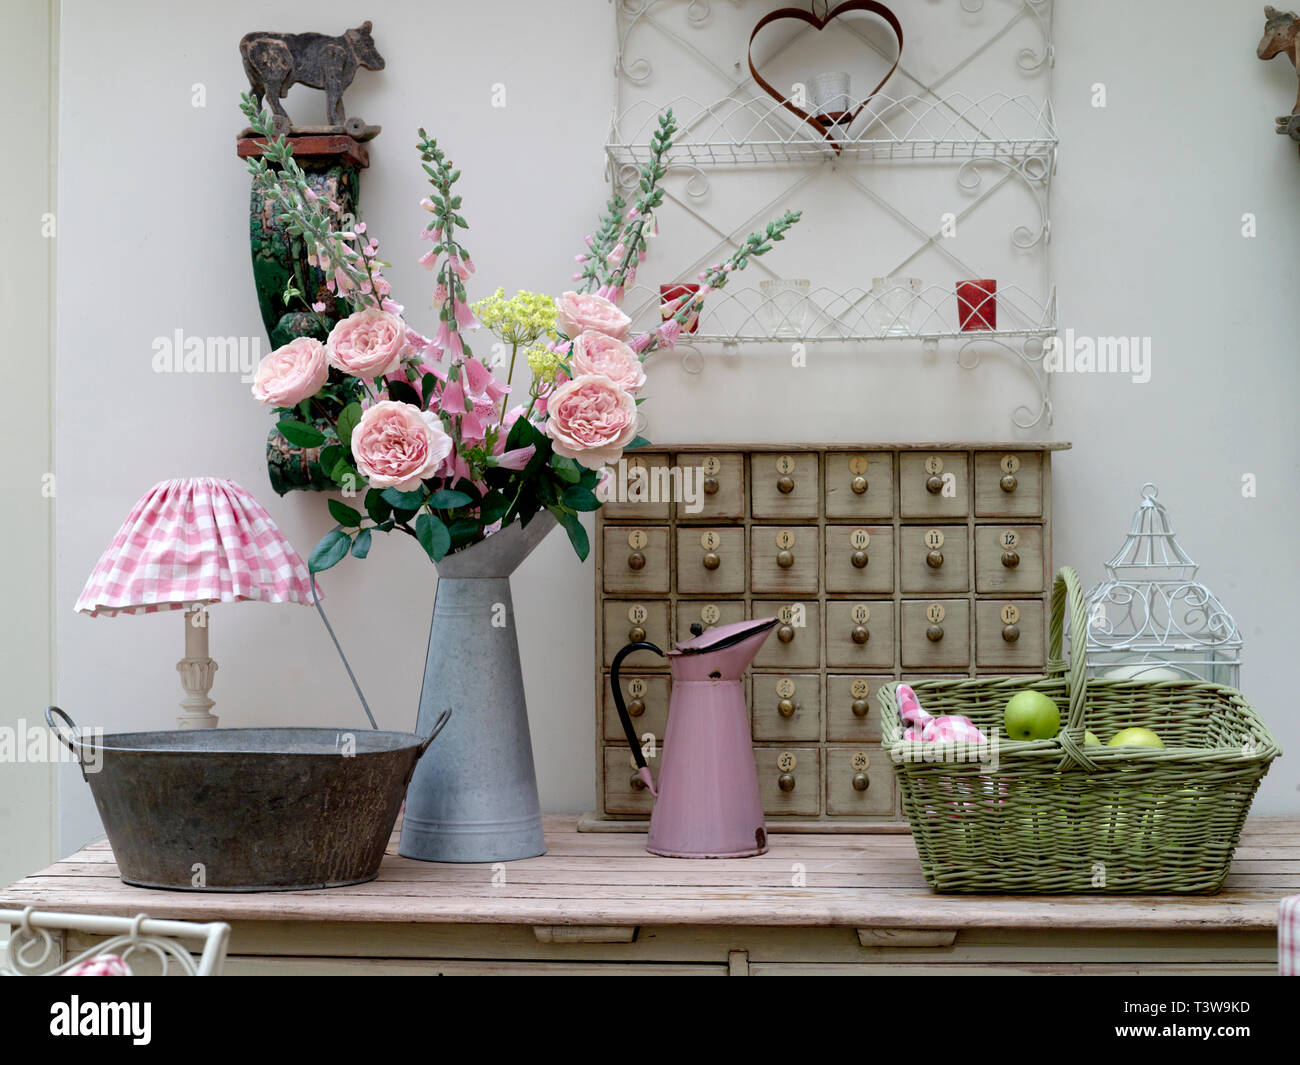 Landhaus Look mit Rosen, Korb mit Äpfeln und Pink & white gingham Lampenschirm Stockfoto